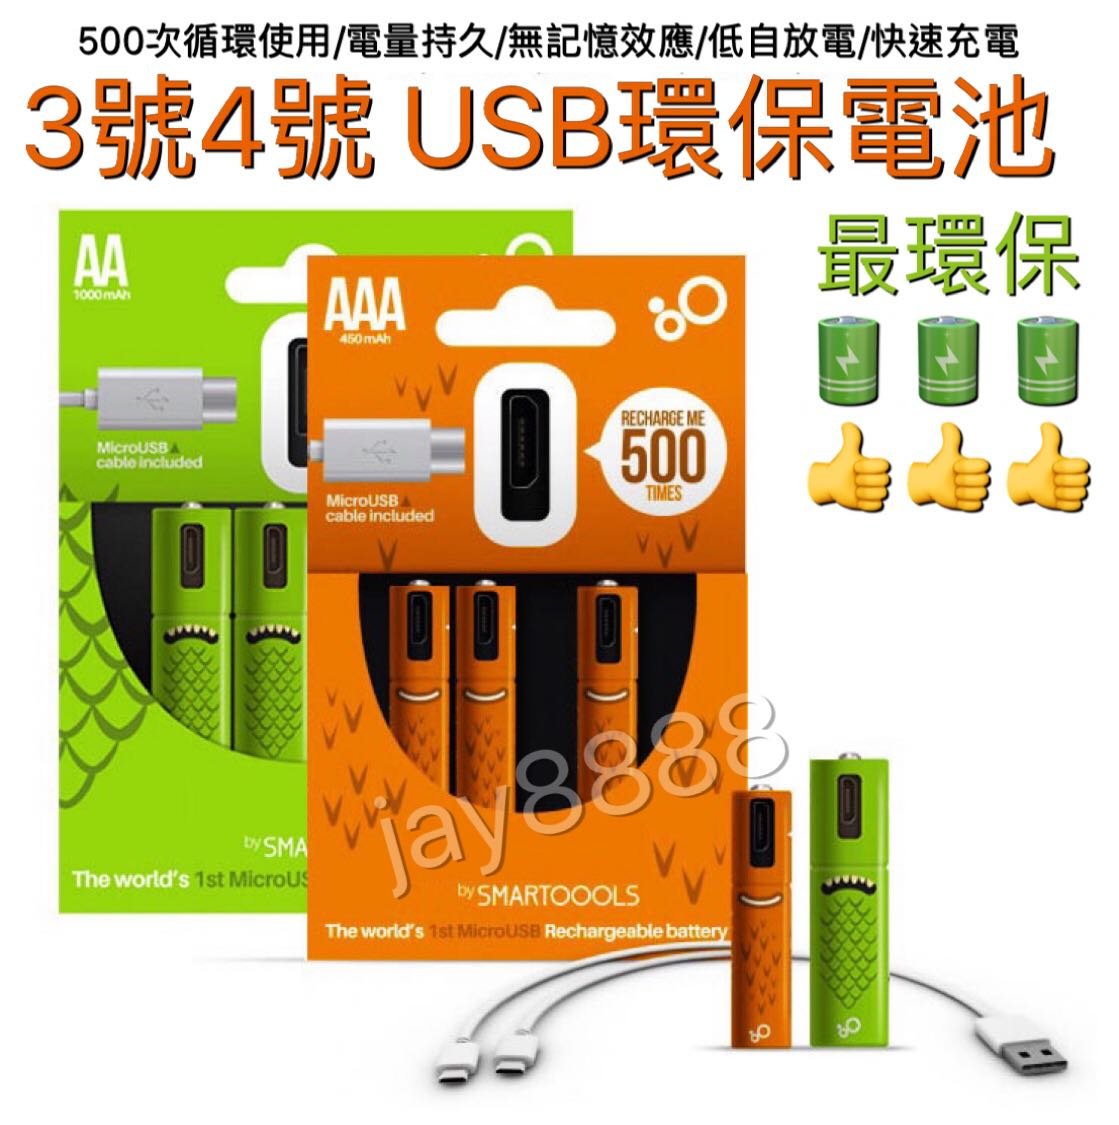 👍4入價格，贈充電線?USB環保鎳氫充電電池 3號/4號皆有 西班牙SMARTOOOLS品牌設計 最環保又省錢